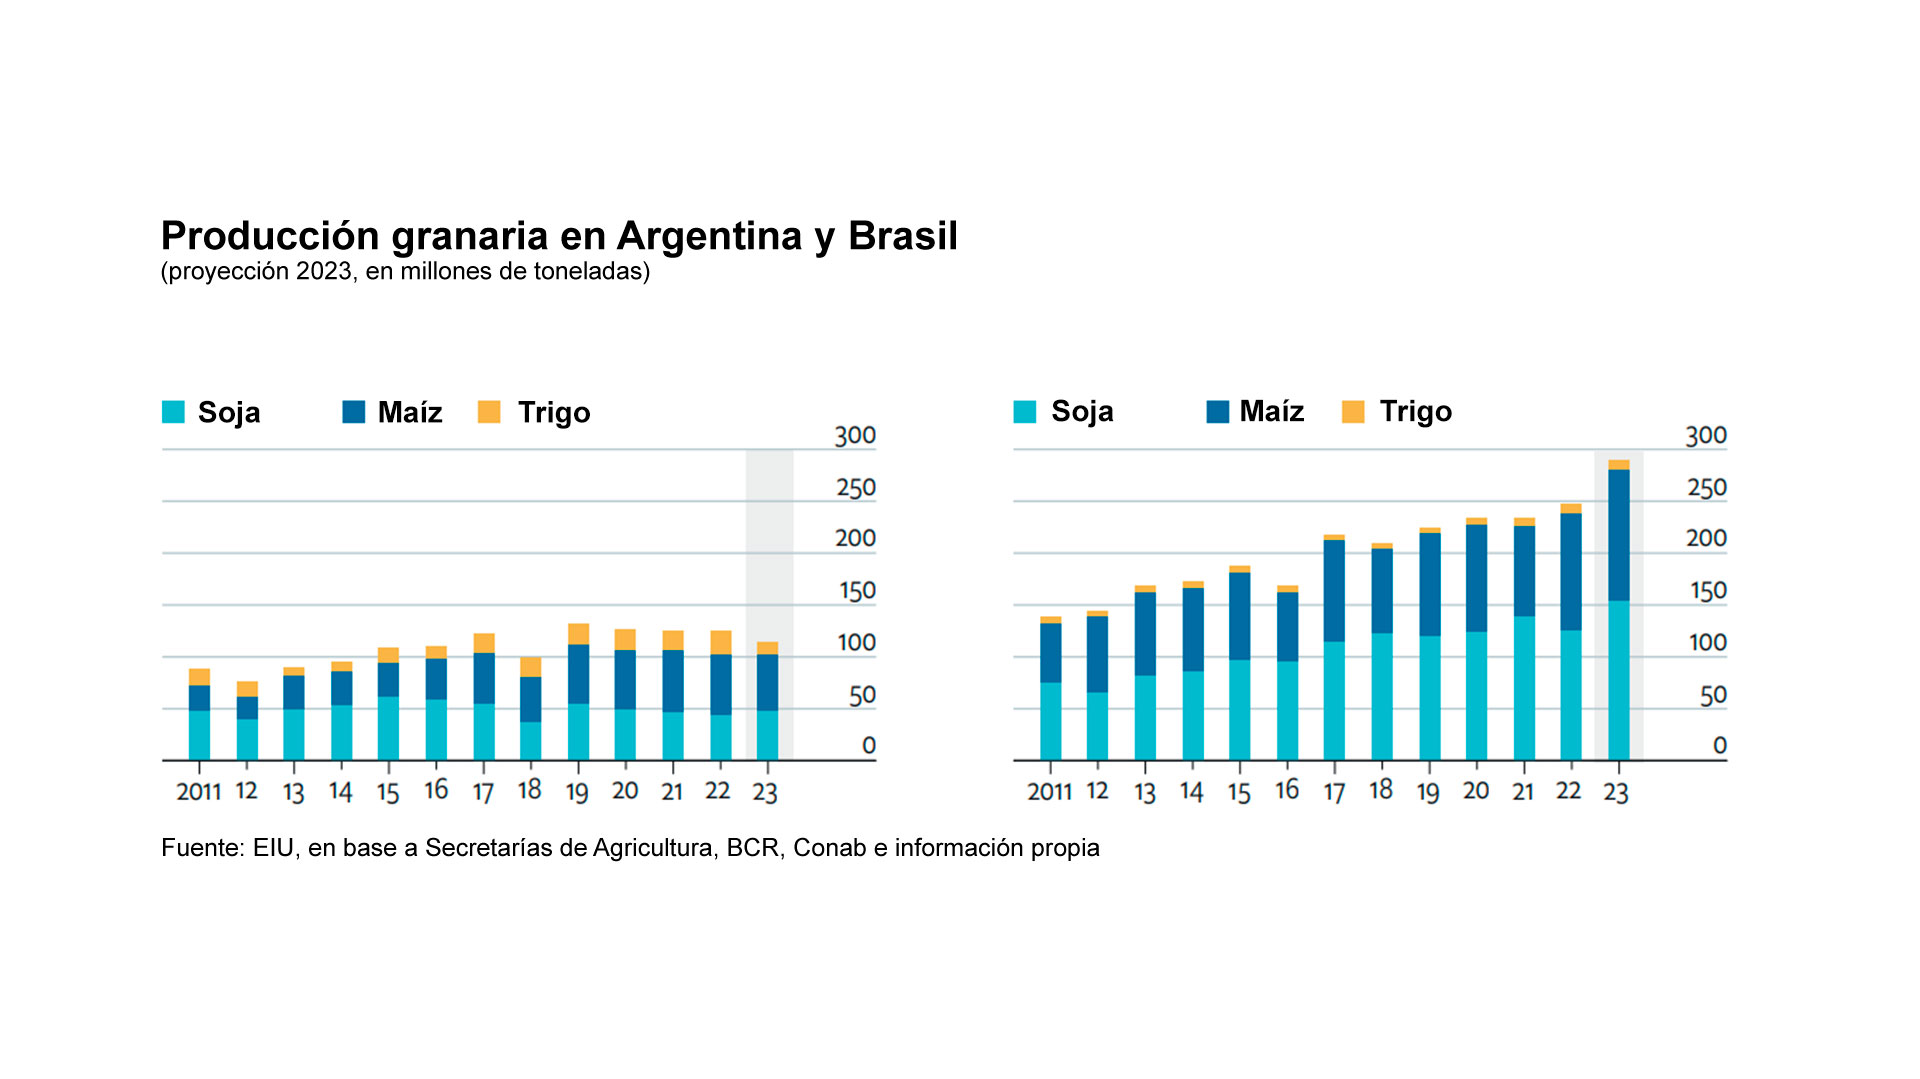 El informe se pregunta si Argentina y Brasil podrían suplir el faltante de granos que generó la guerra en Ucrania y responde que Brasil sí y la Argentina no, por cuestiones climáticas y de política económica